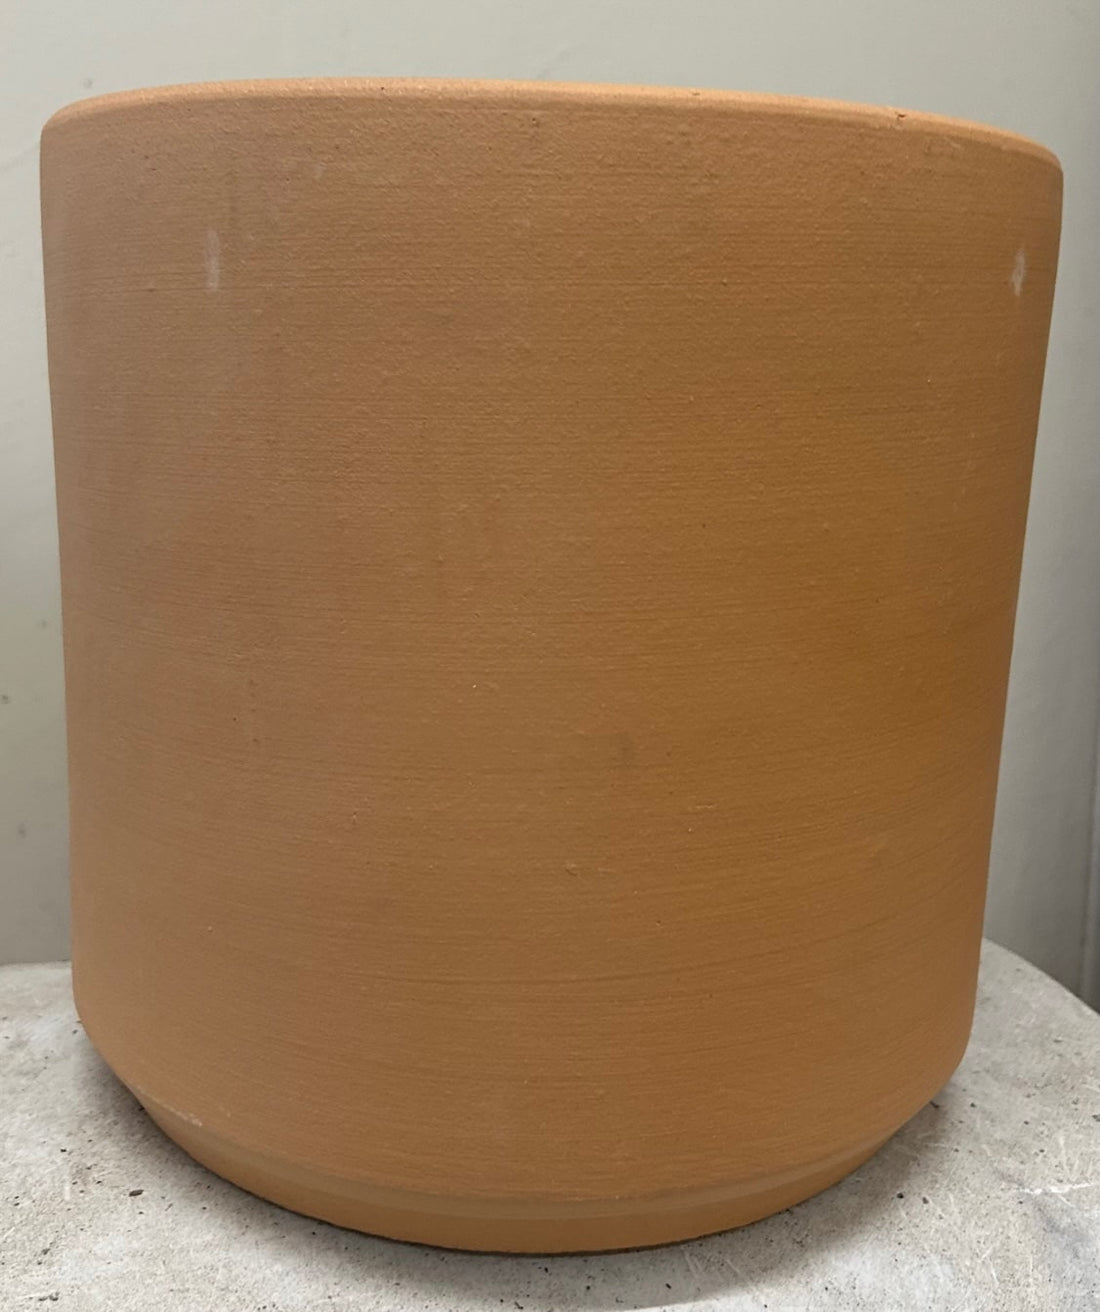 21" Deep Cylinder Buff Clay Pot